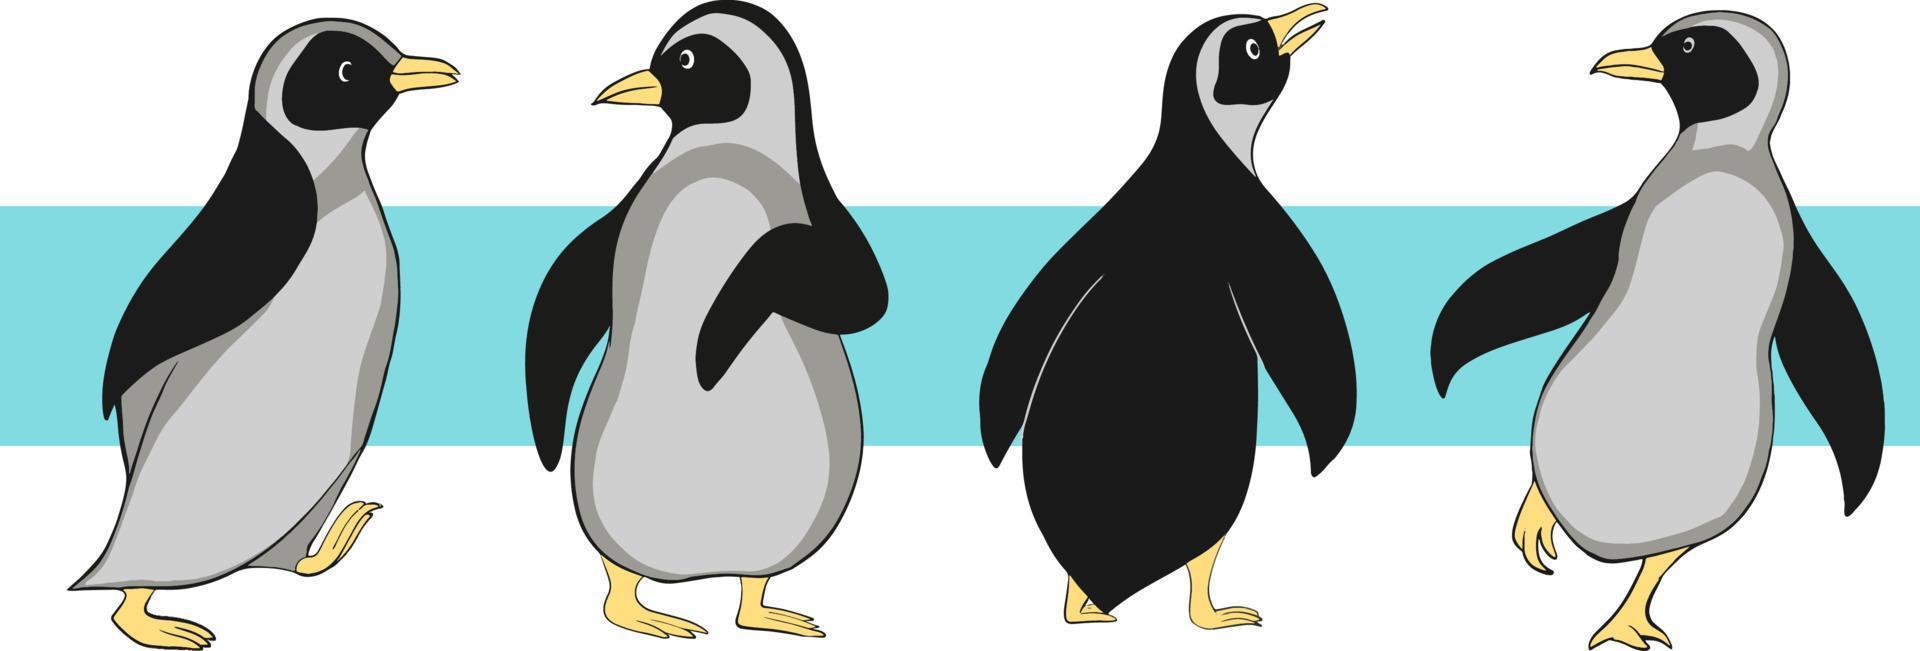 personnages de pingouins dans différentes poses. manchots empereurs sur fond blanc. nature antarctique. illustration vectorielle. vecteur